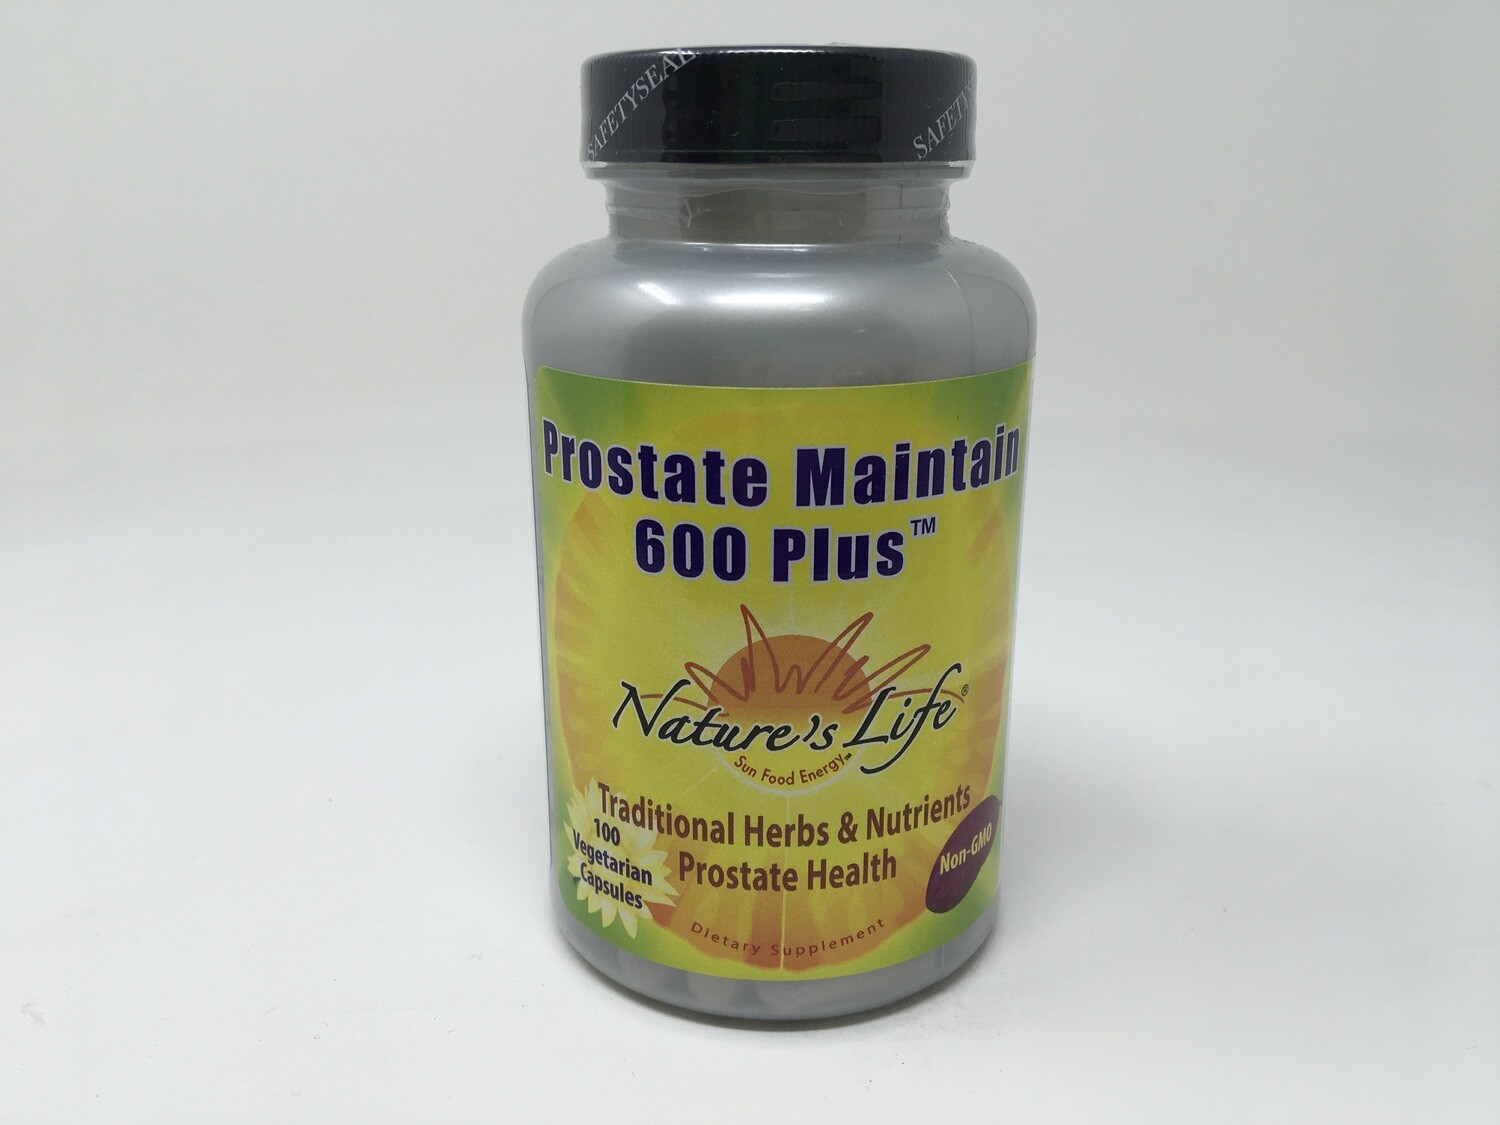 Prostate Maintain 600 Plus